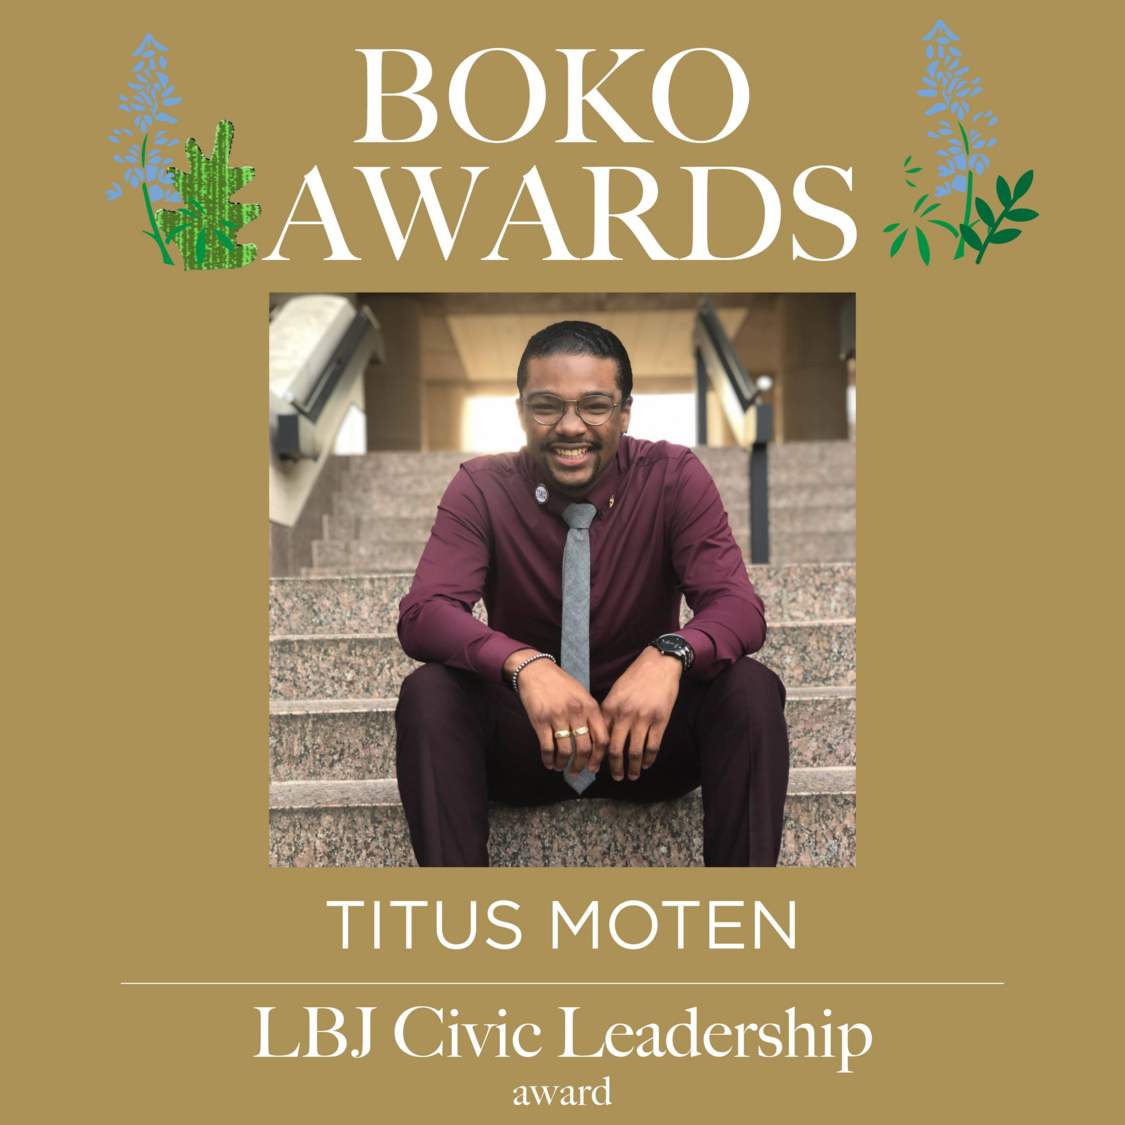 Picture of text displaying that Titus Moten won the LBJ Civic Leadership award.